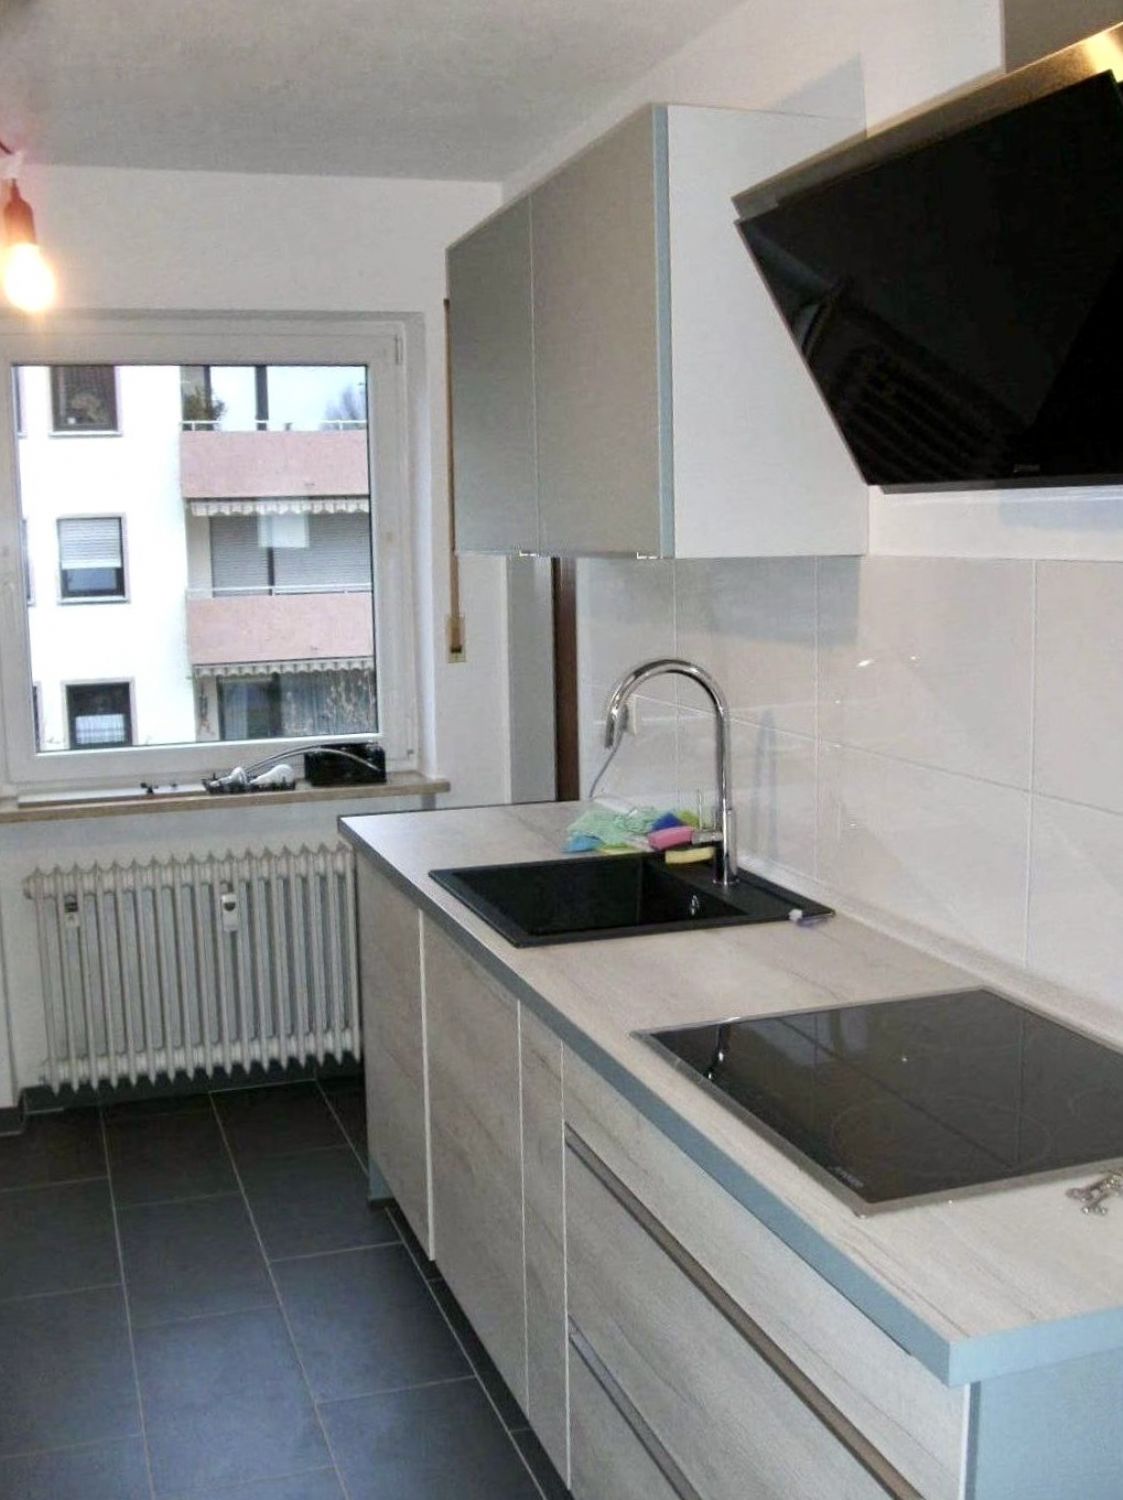 Große Wohnküche mit ablösbarer Einbauküche für 2.000,-- EUR